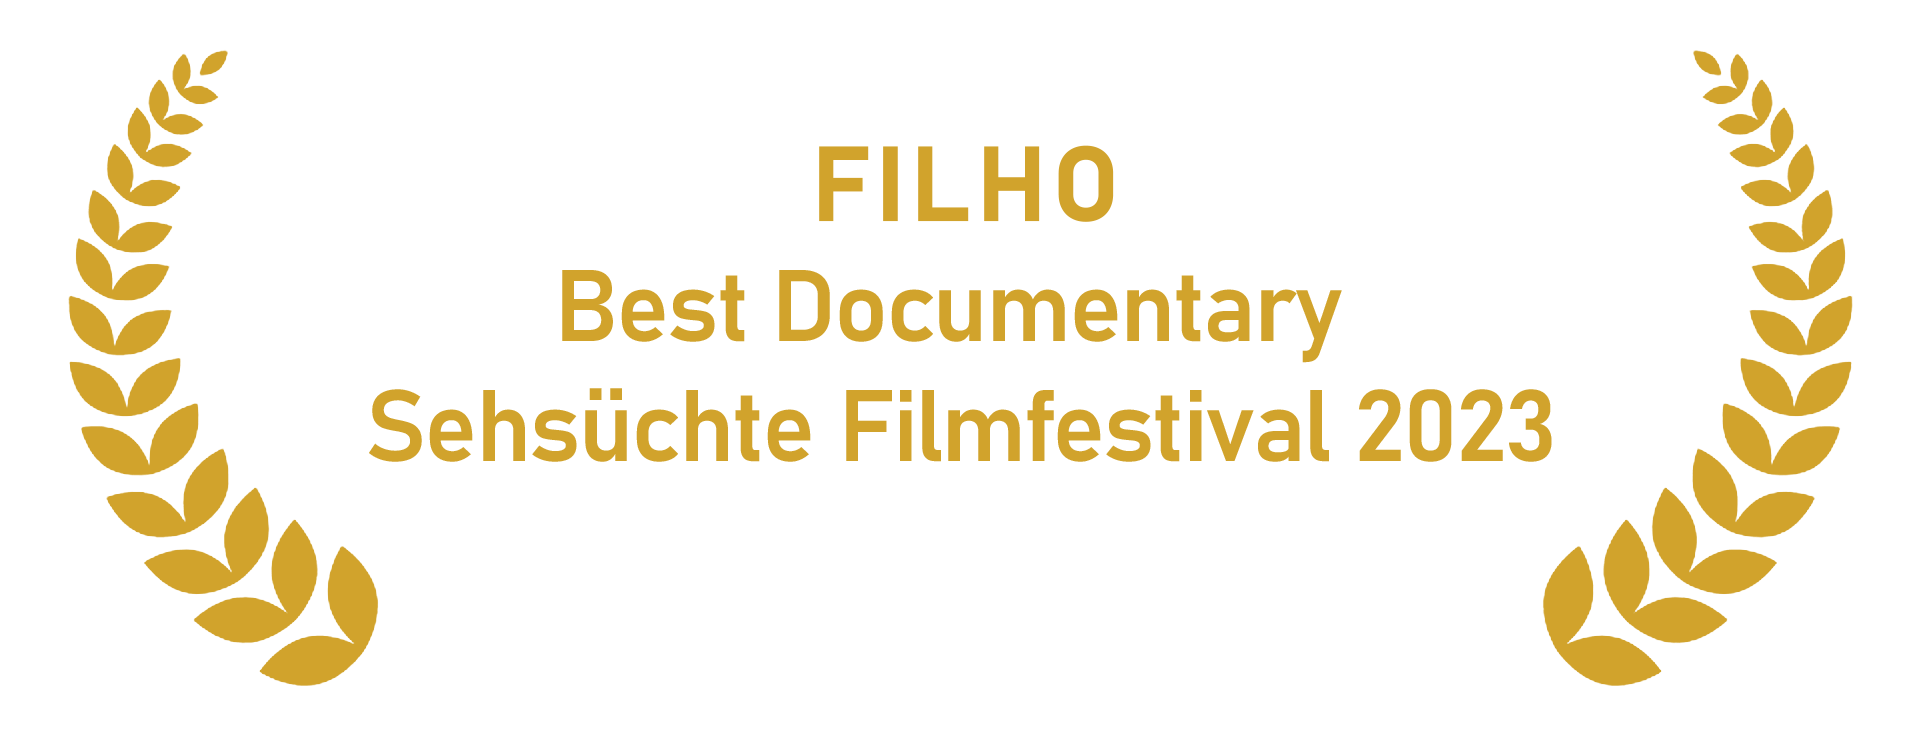 Filho Best Documentary op het Sehsüchte Filmfestival 2023